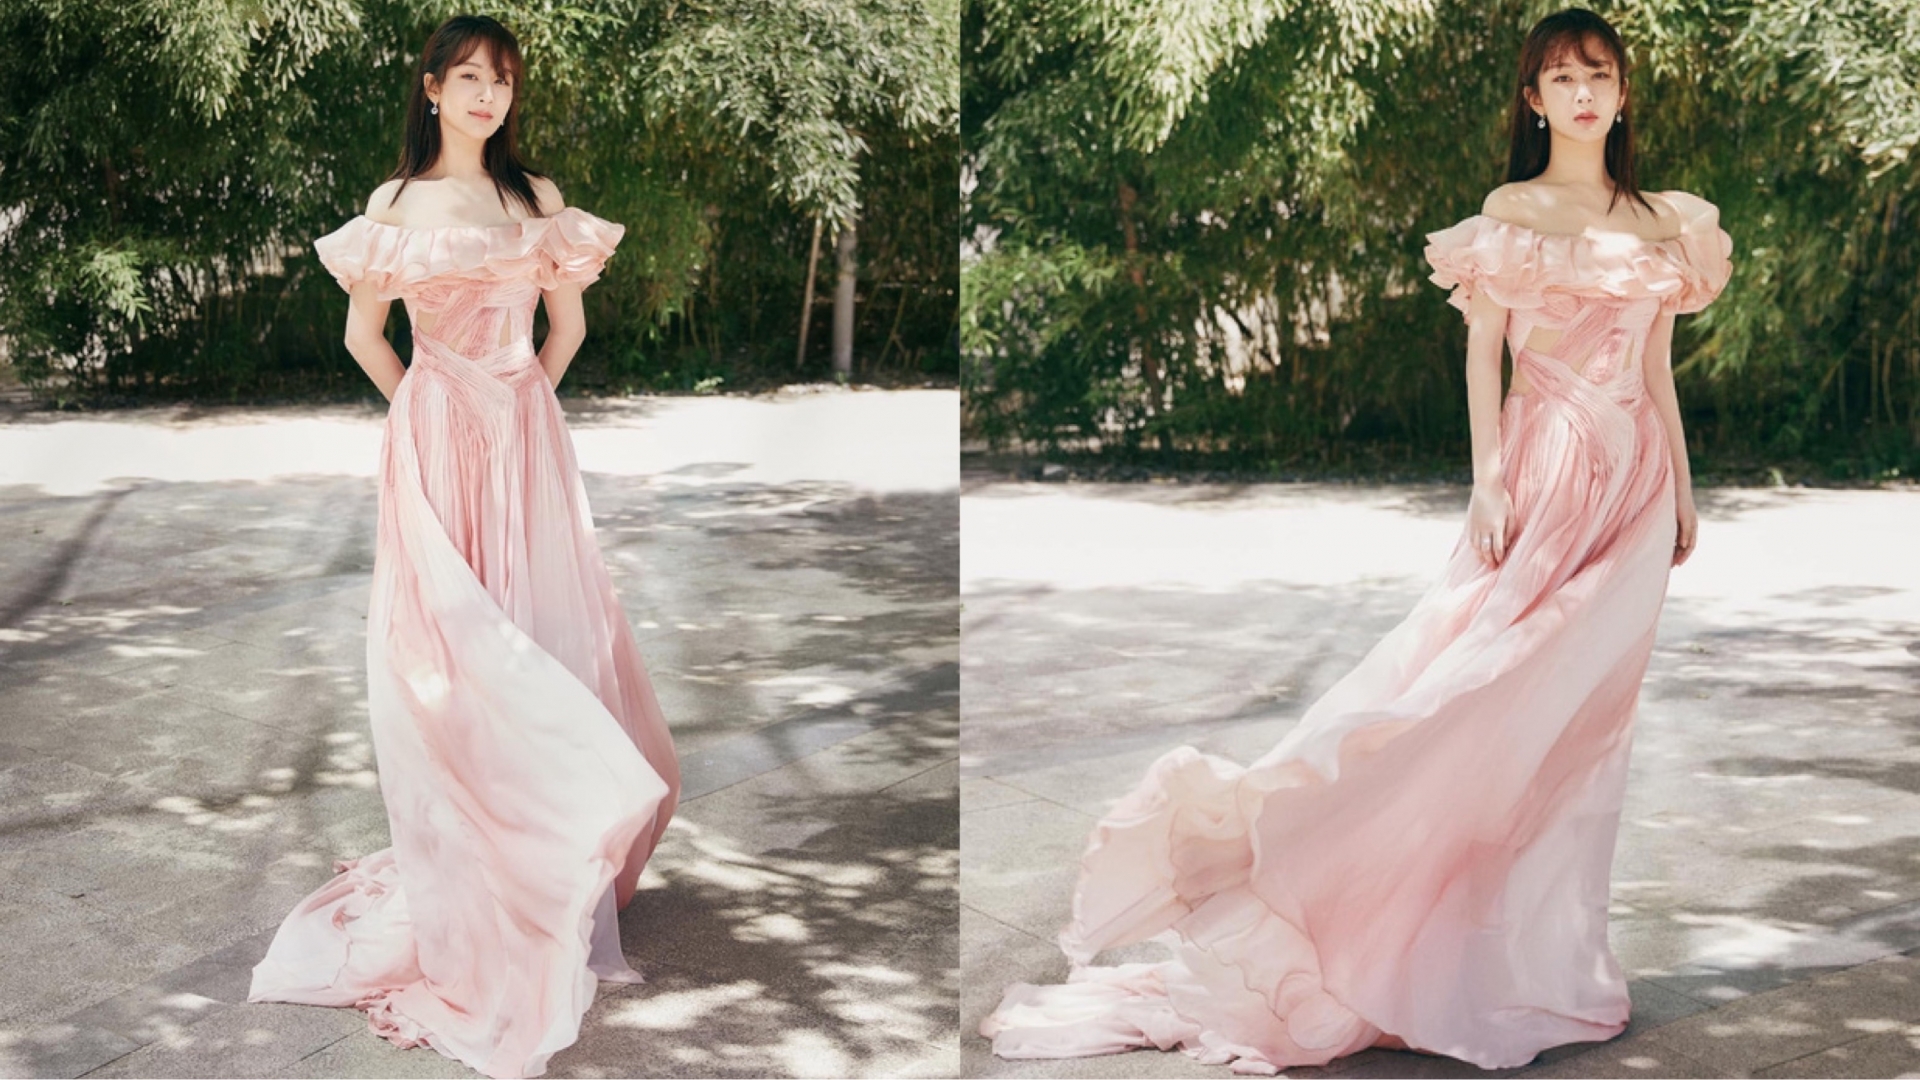 Trong loạt ảnh studio trước sự kiện, Dương Tử thực sự xinh đẹp và quyến rũ trong chiếc đầm màu hồng thướt tha của NTK Công Trí. Thậm chí nhiều người còn bình luận rằng cô nàng đã 'rửa phèn' thành công.